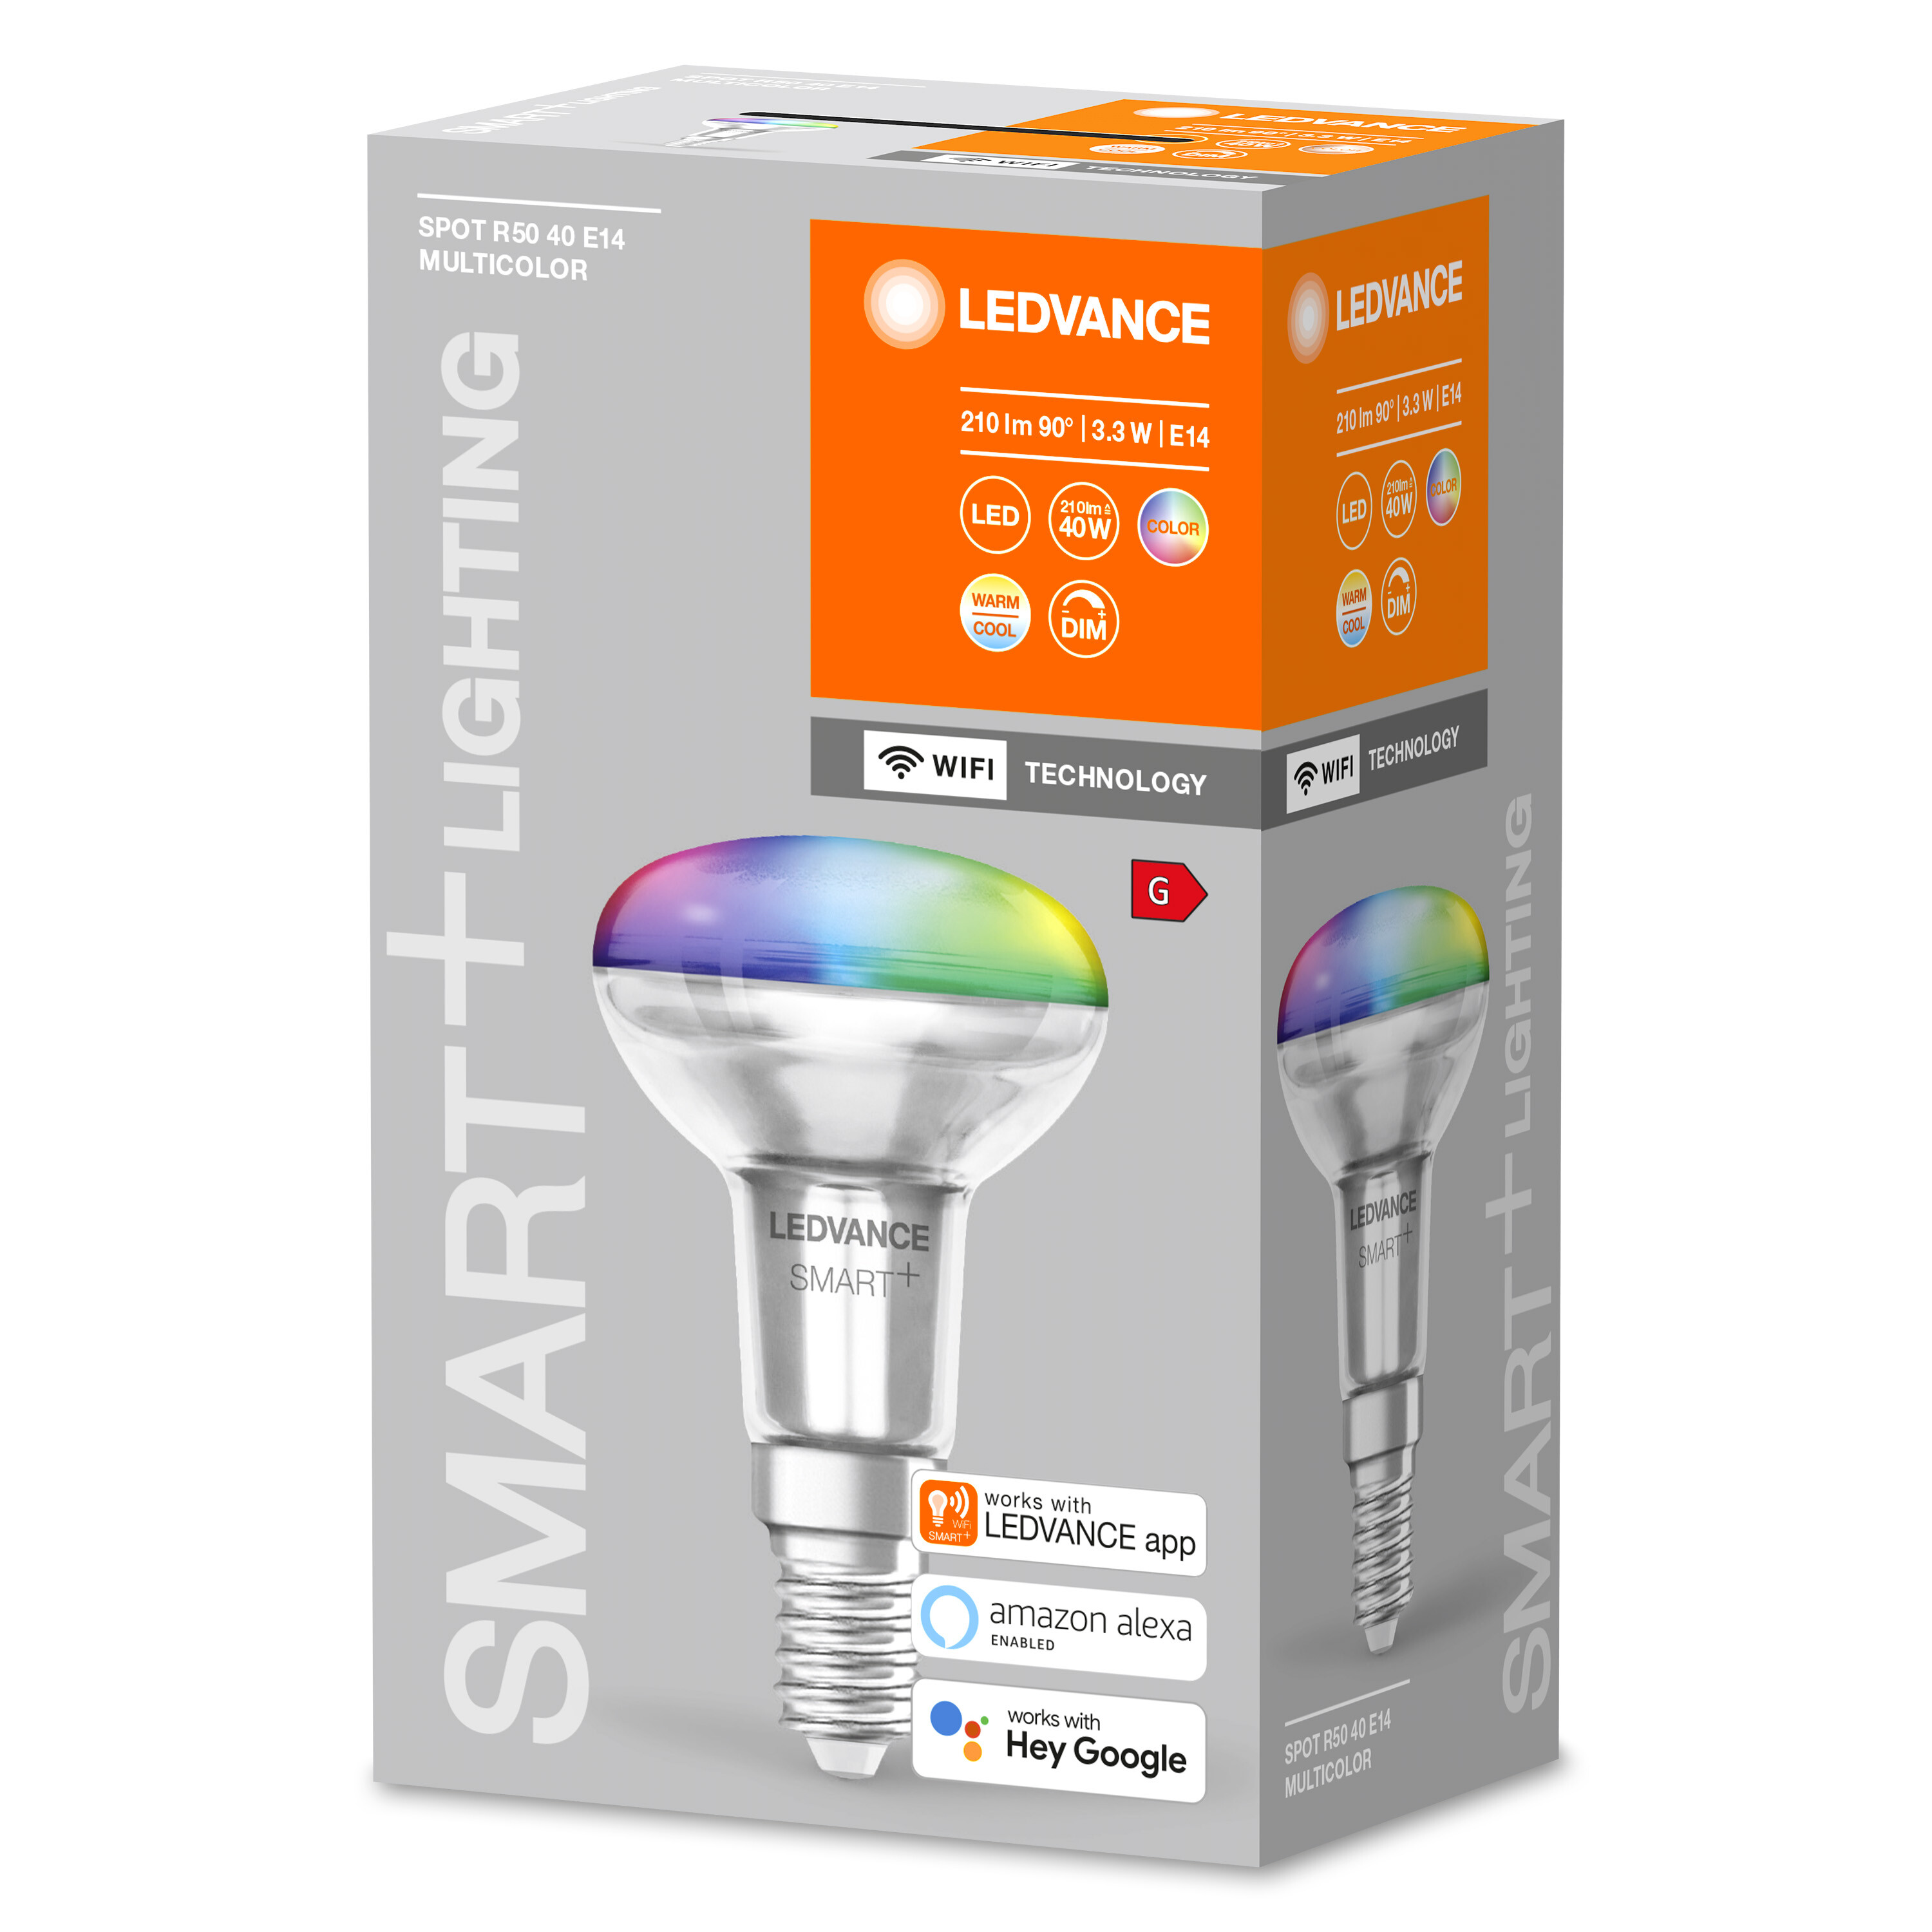 LEDVANCE SMART+ SPOT CONCENTRA R50 Lichtfarbe 3W E14 Multicolor Lampe änderbar LED Multicolor 40